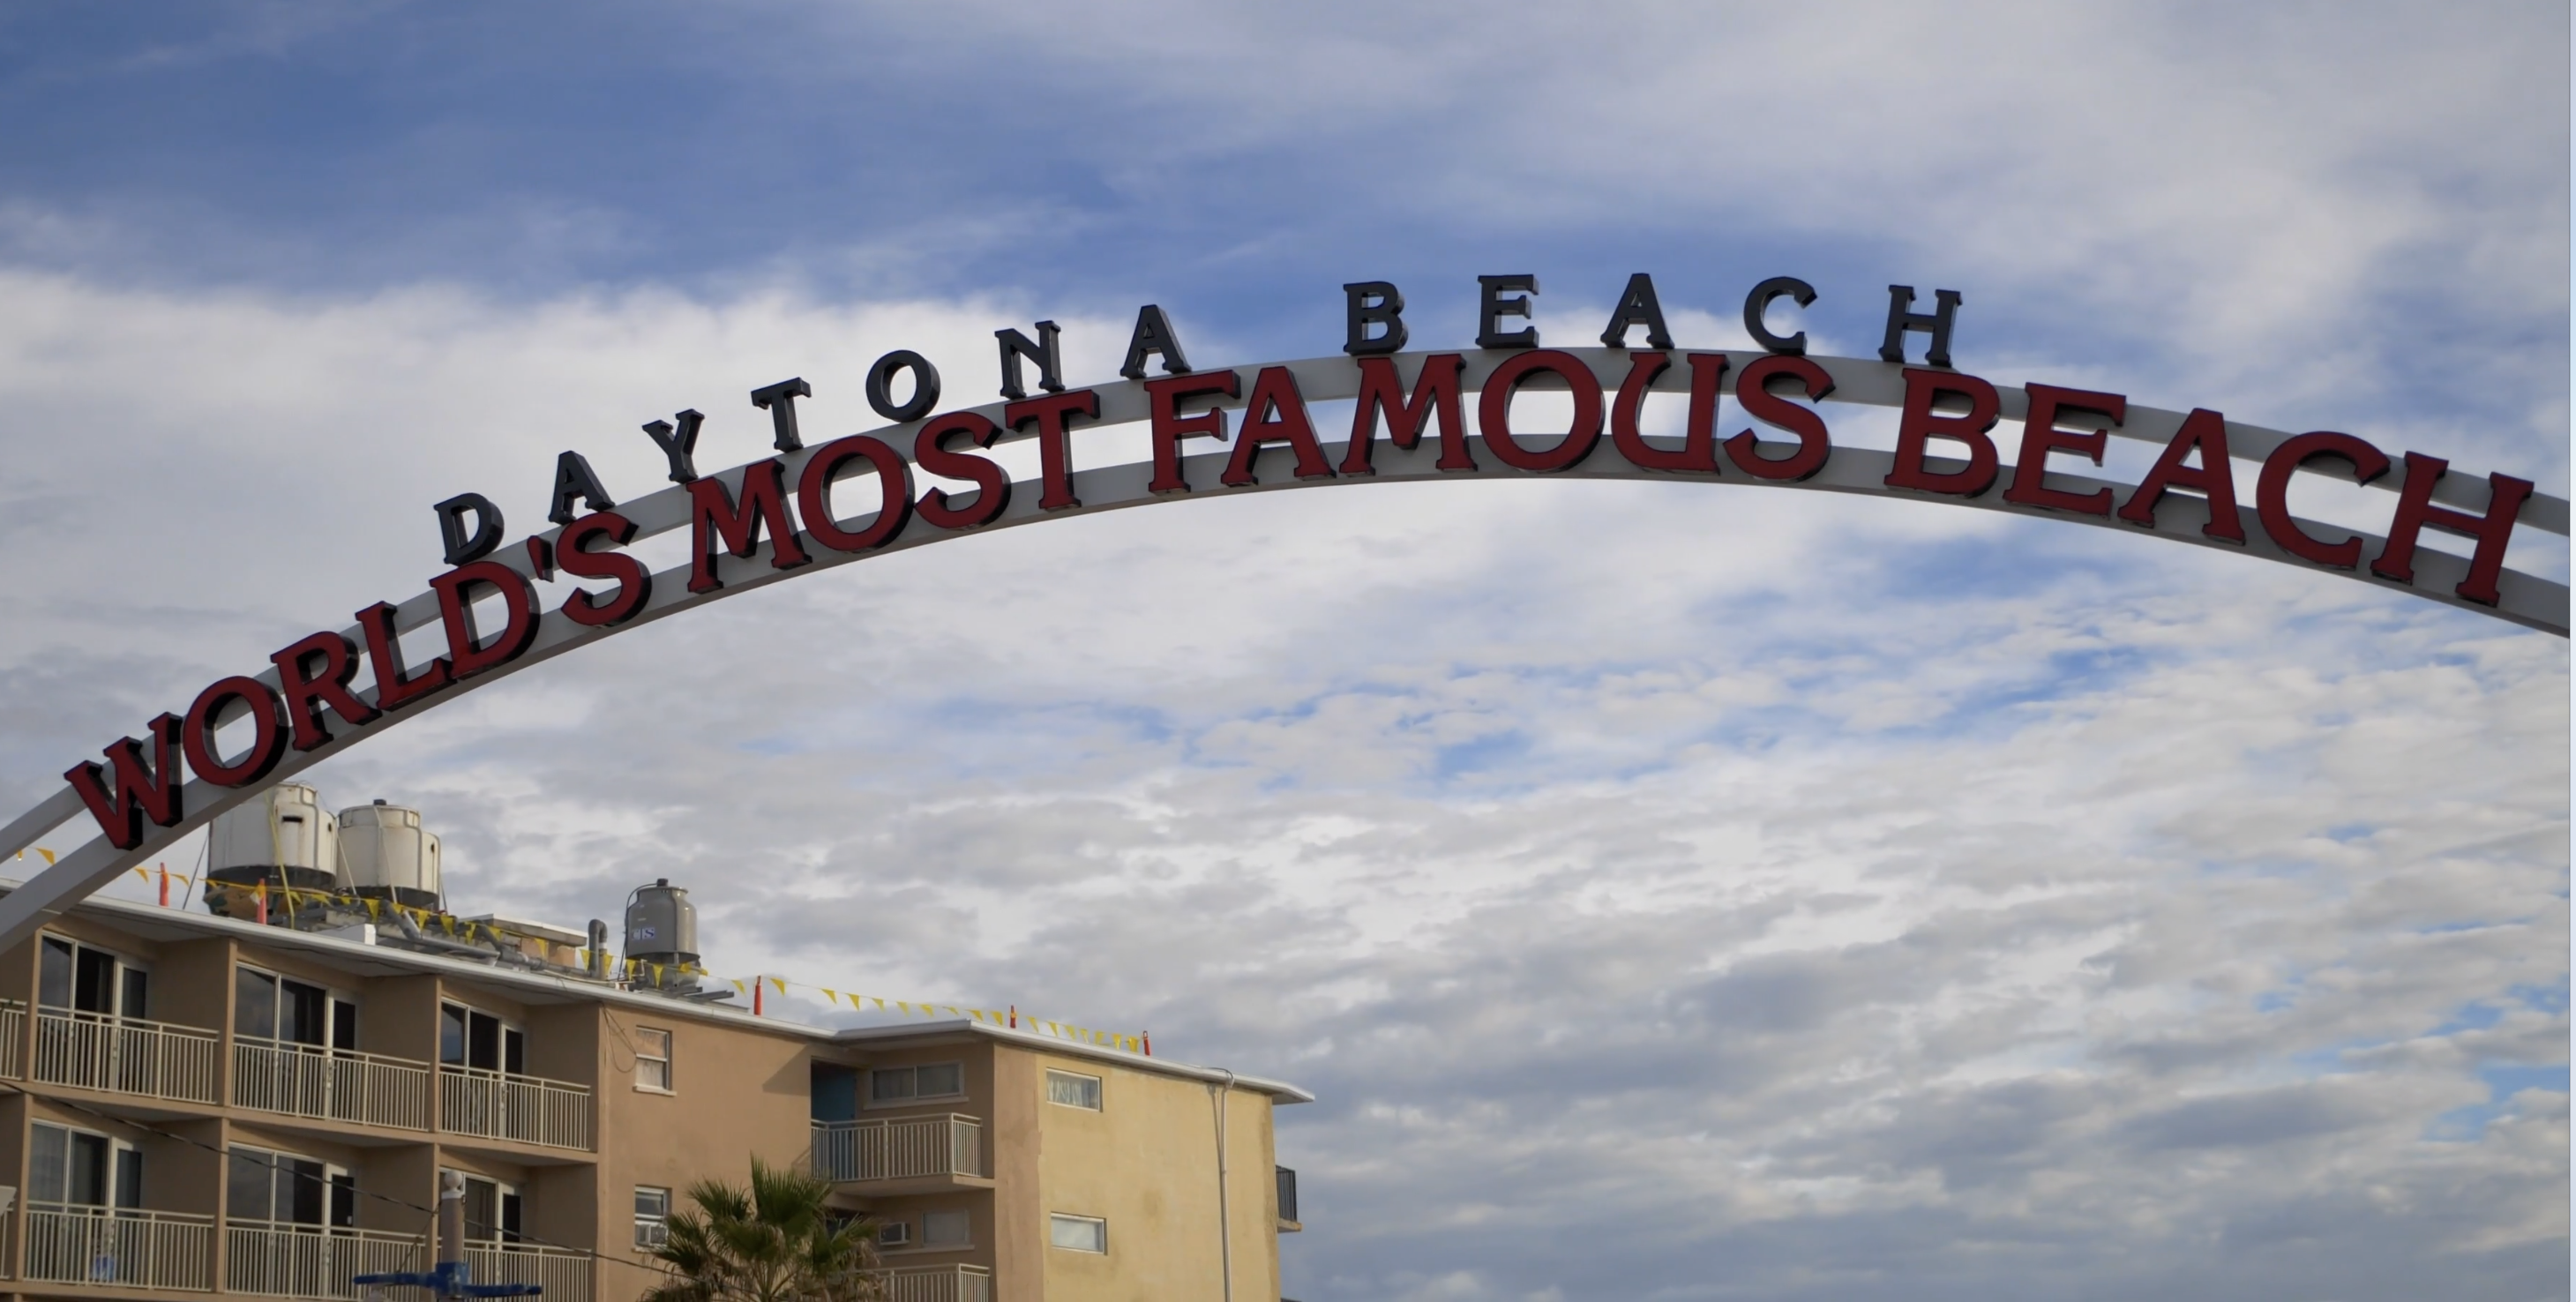 daytona beach worlds most famous